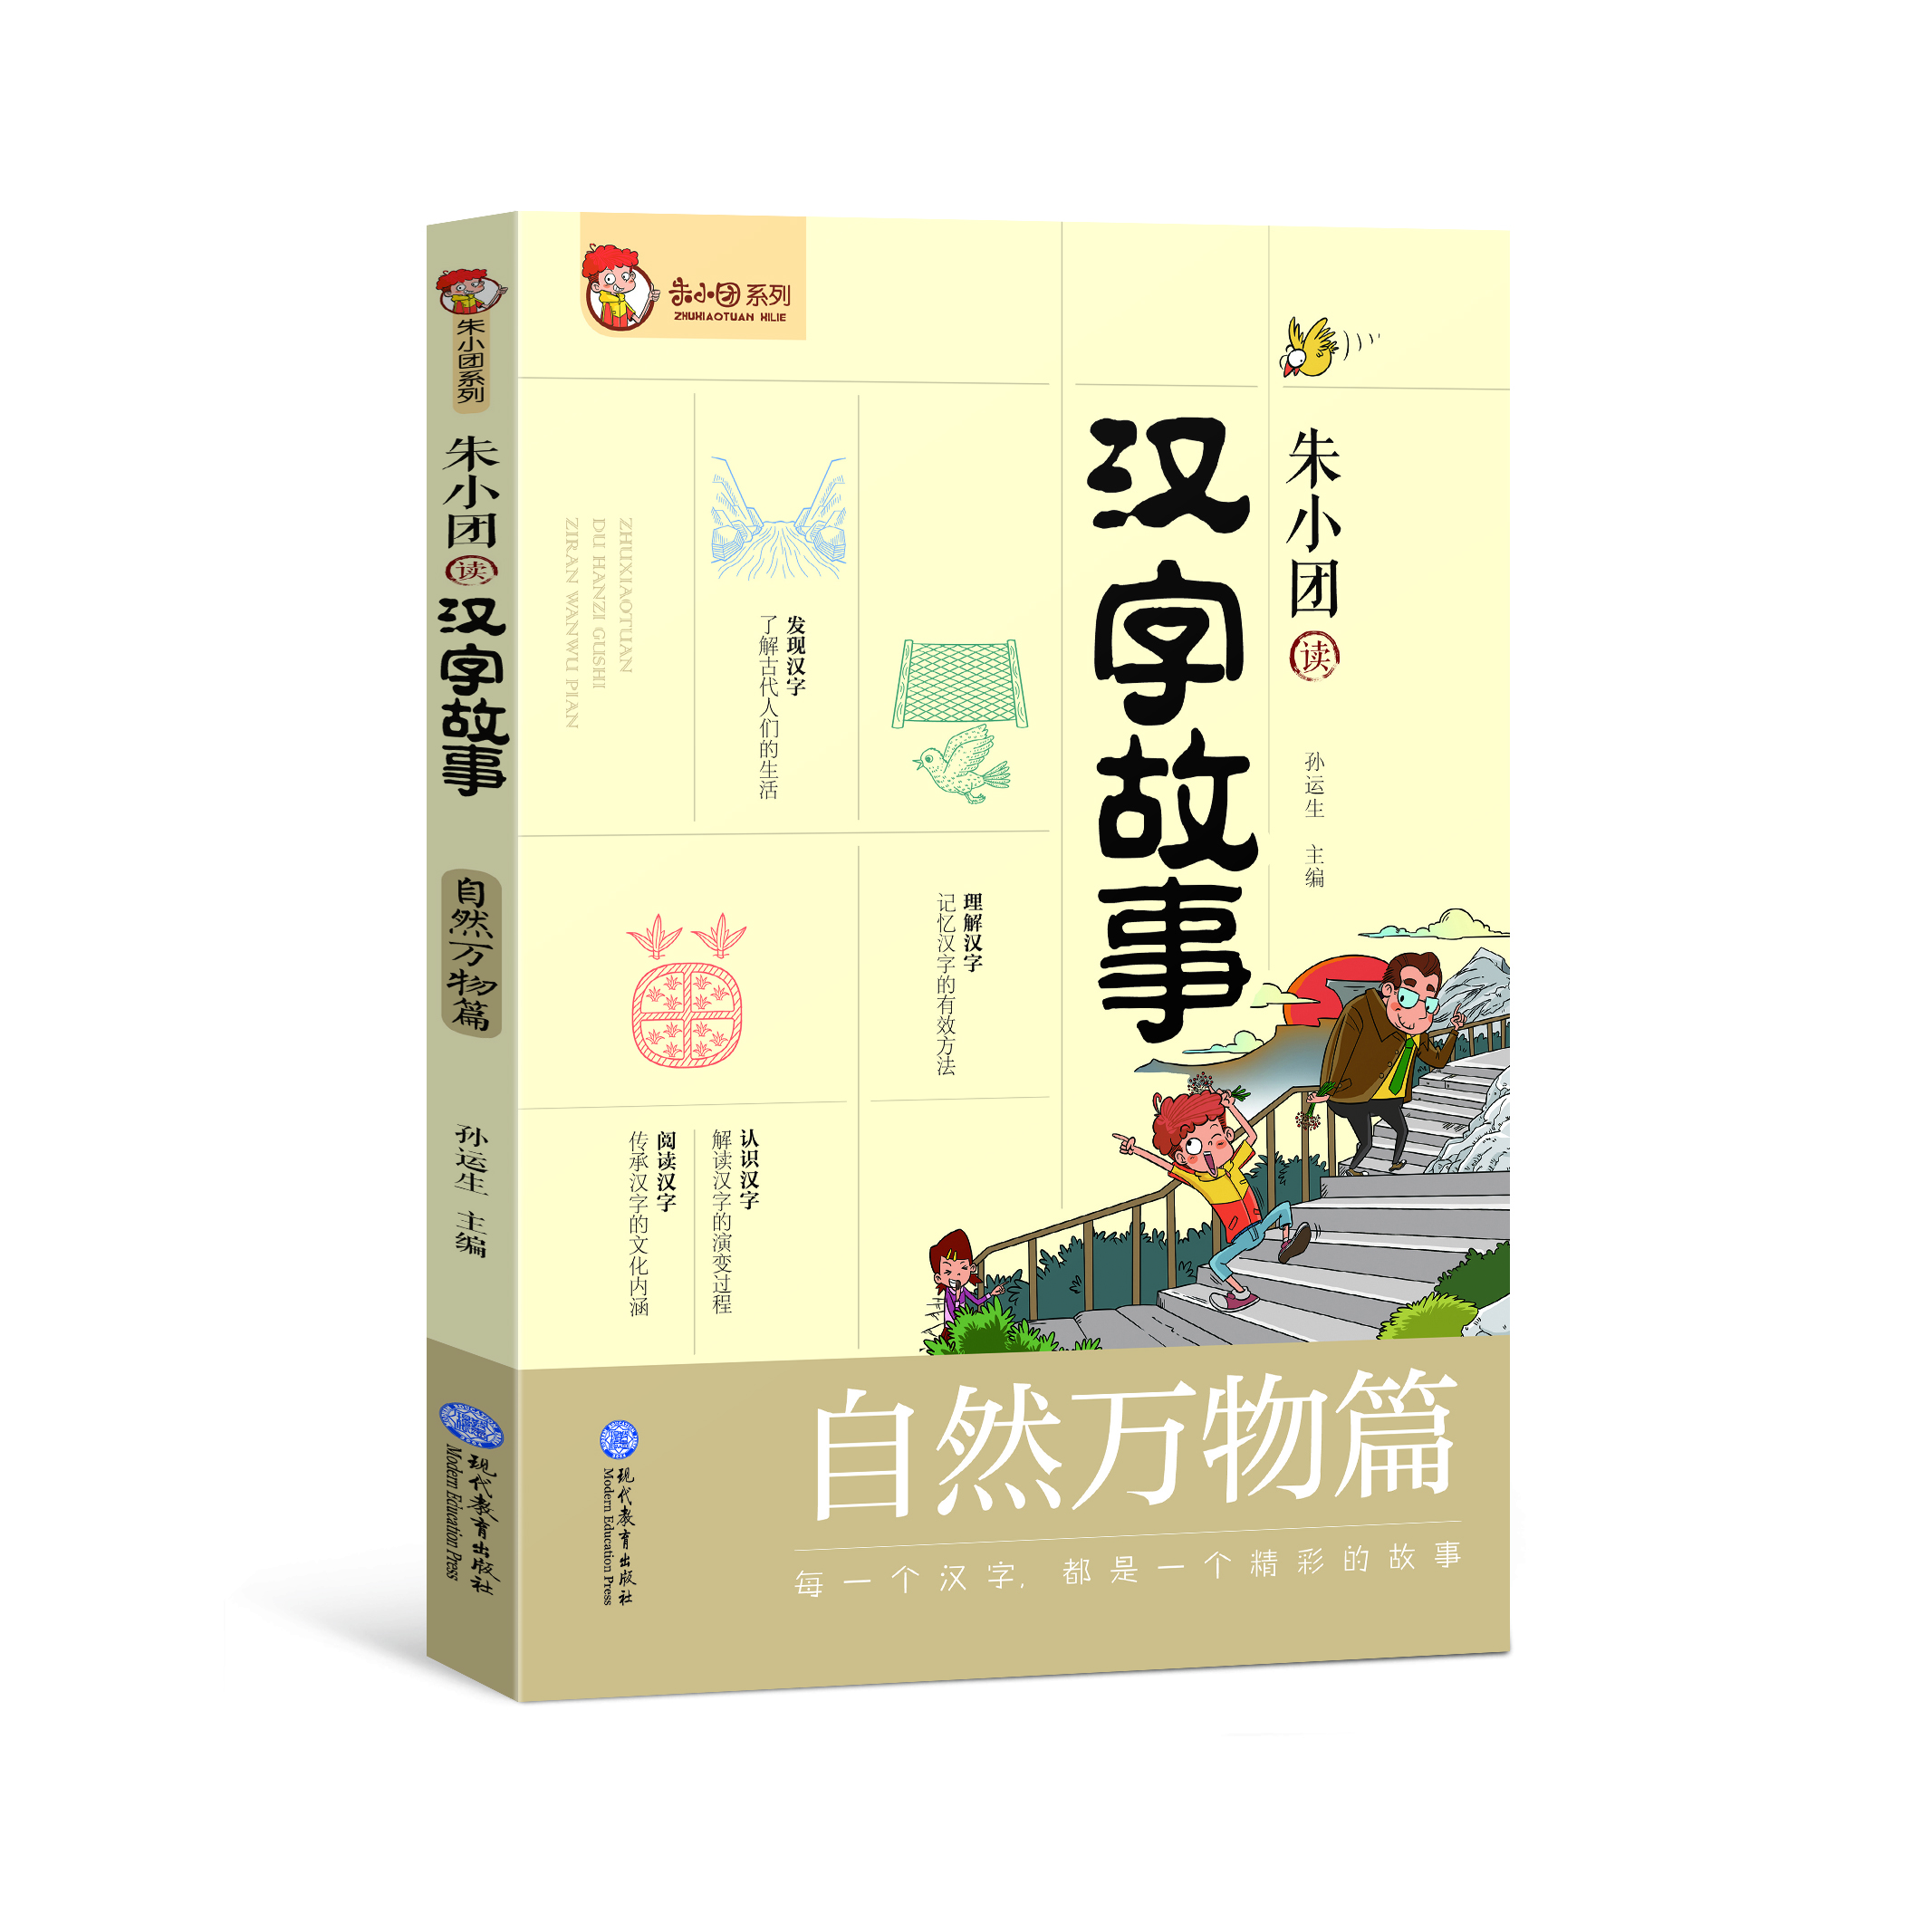 朱小团读汉字故事成长生活篇 家庭教育 现代教育出版社有限公司